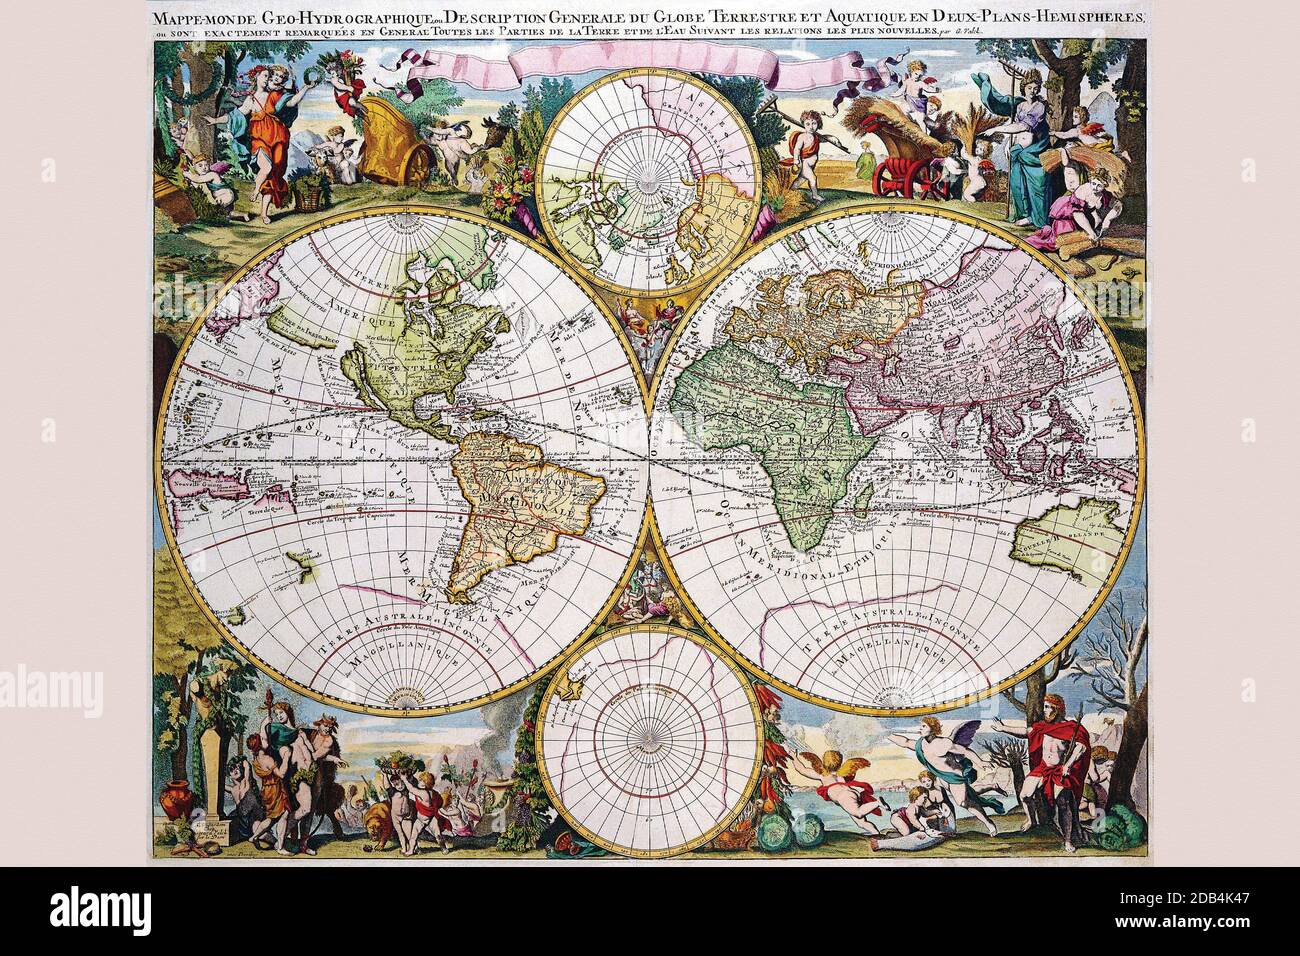 Mappe-monde Geo-Hydrographe Description générale du Globe Terresterre Aquatique en deux plans hémisphères. Banque D'Images